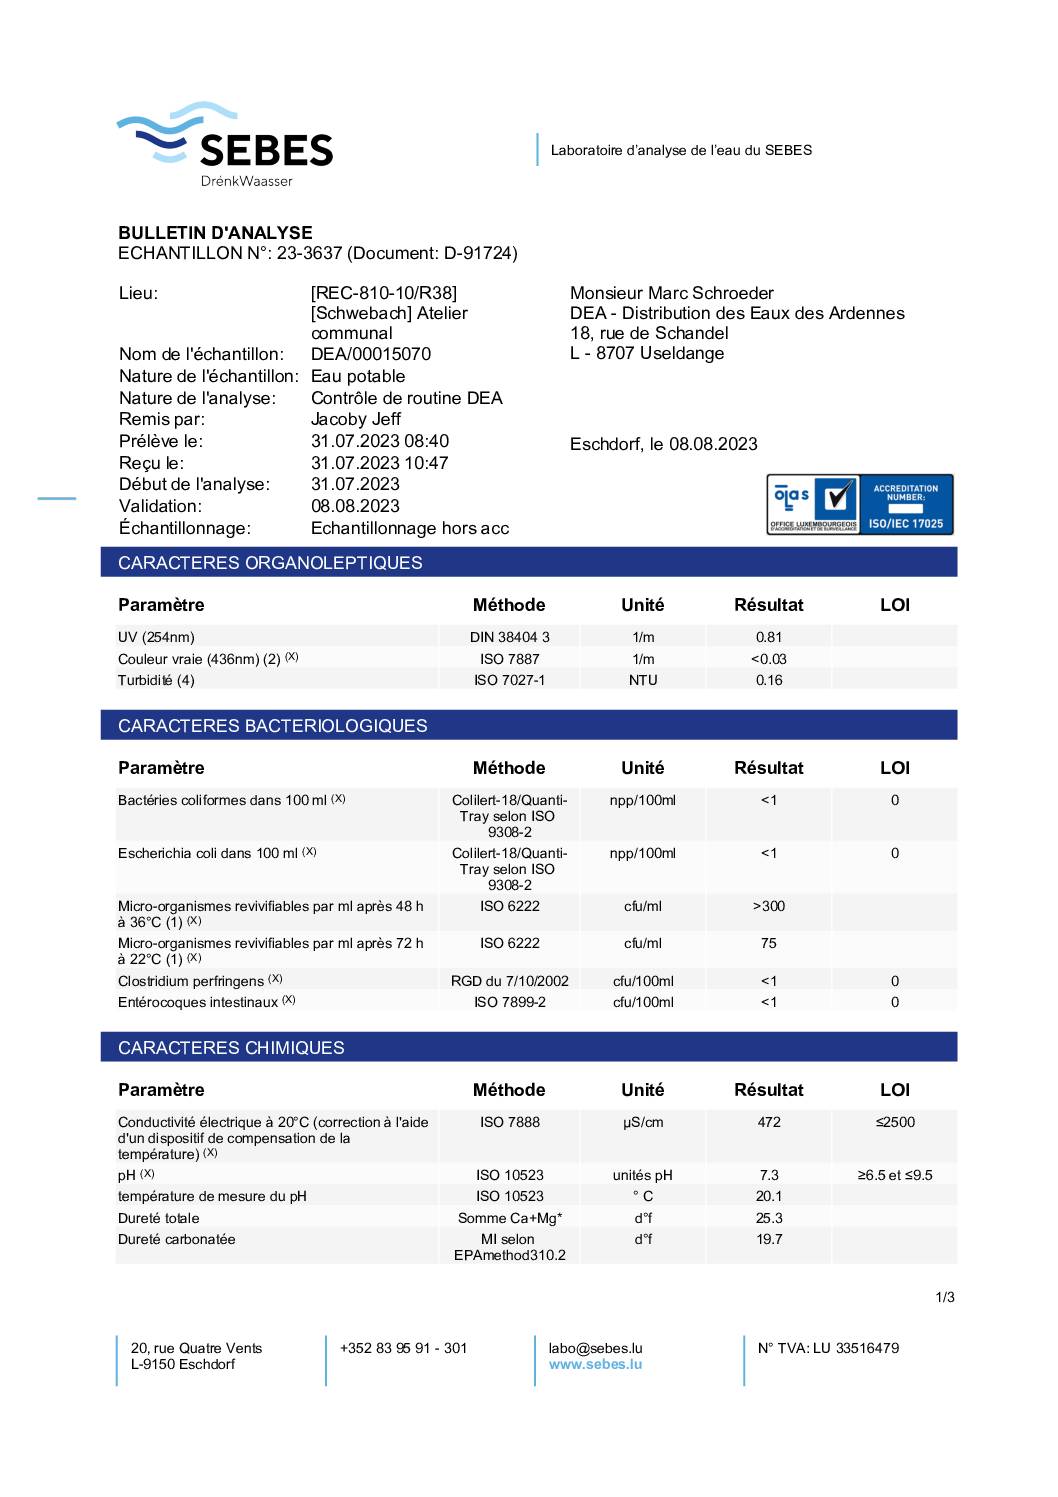 Analyse d'eau potable DEA - 31.07.2023 | REC-810-10/R38, Schwebach - Atelier communal